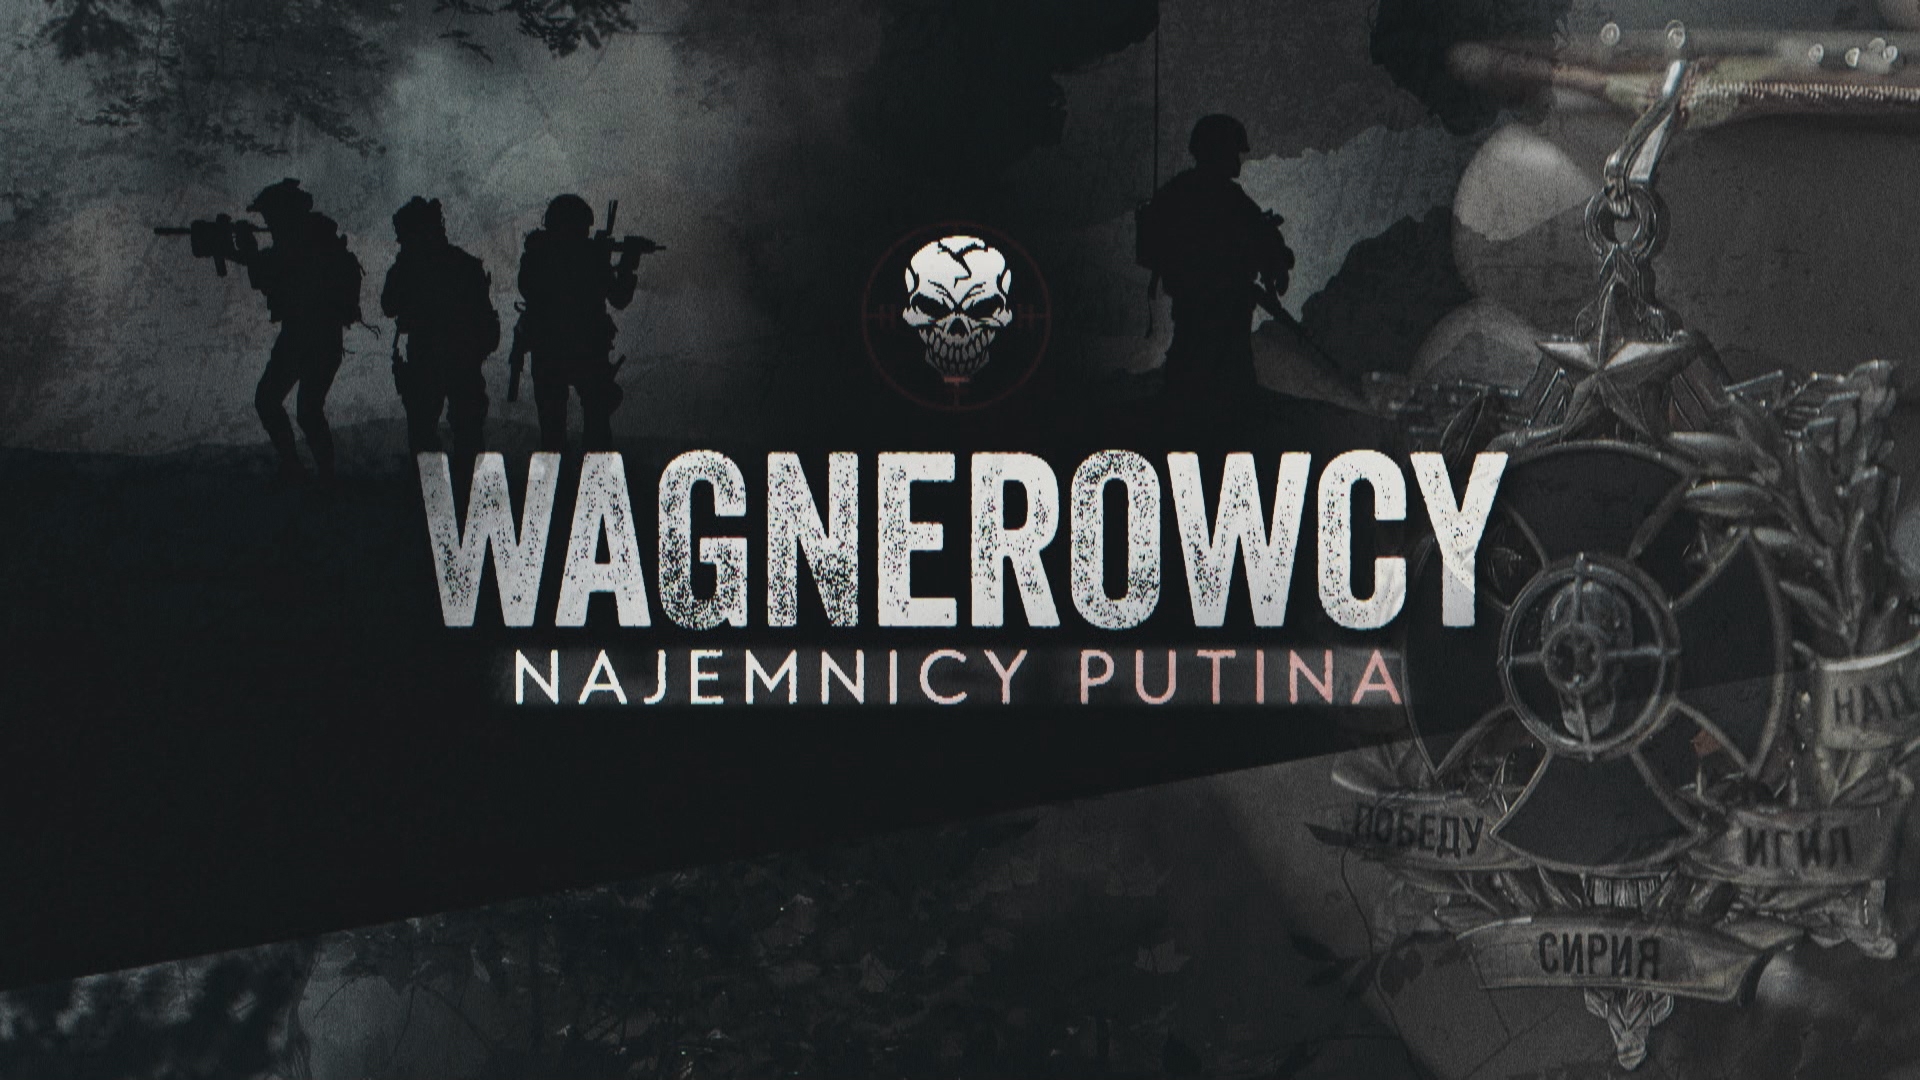 The Wagner Group. Putin’s Mercenaries